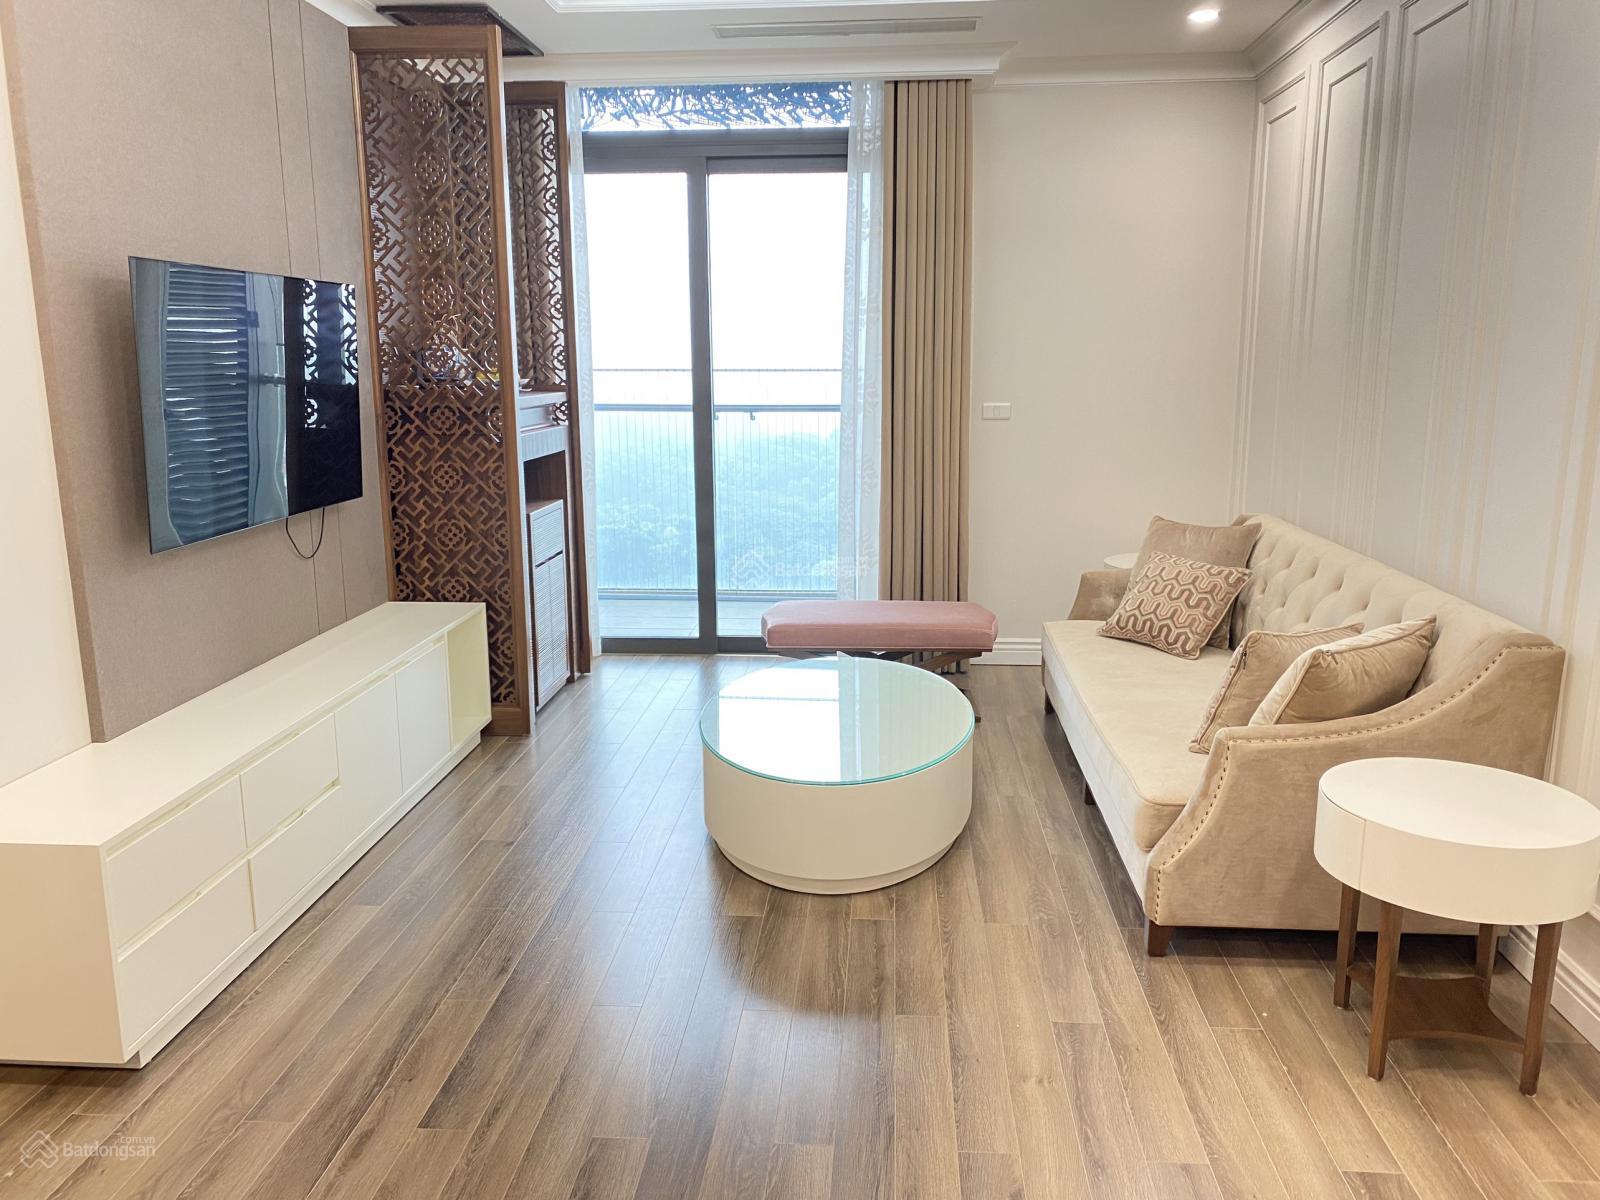 Cho thuê căn hộ 3 phòng ngủ full nội thất siêu đẹp tòa Tân Hoàng Minh, Quảng An, ảnh thực tế 1011913